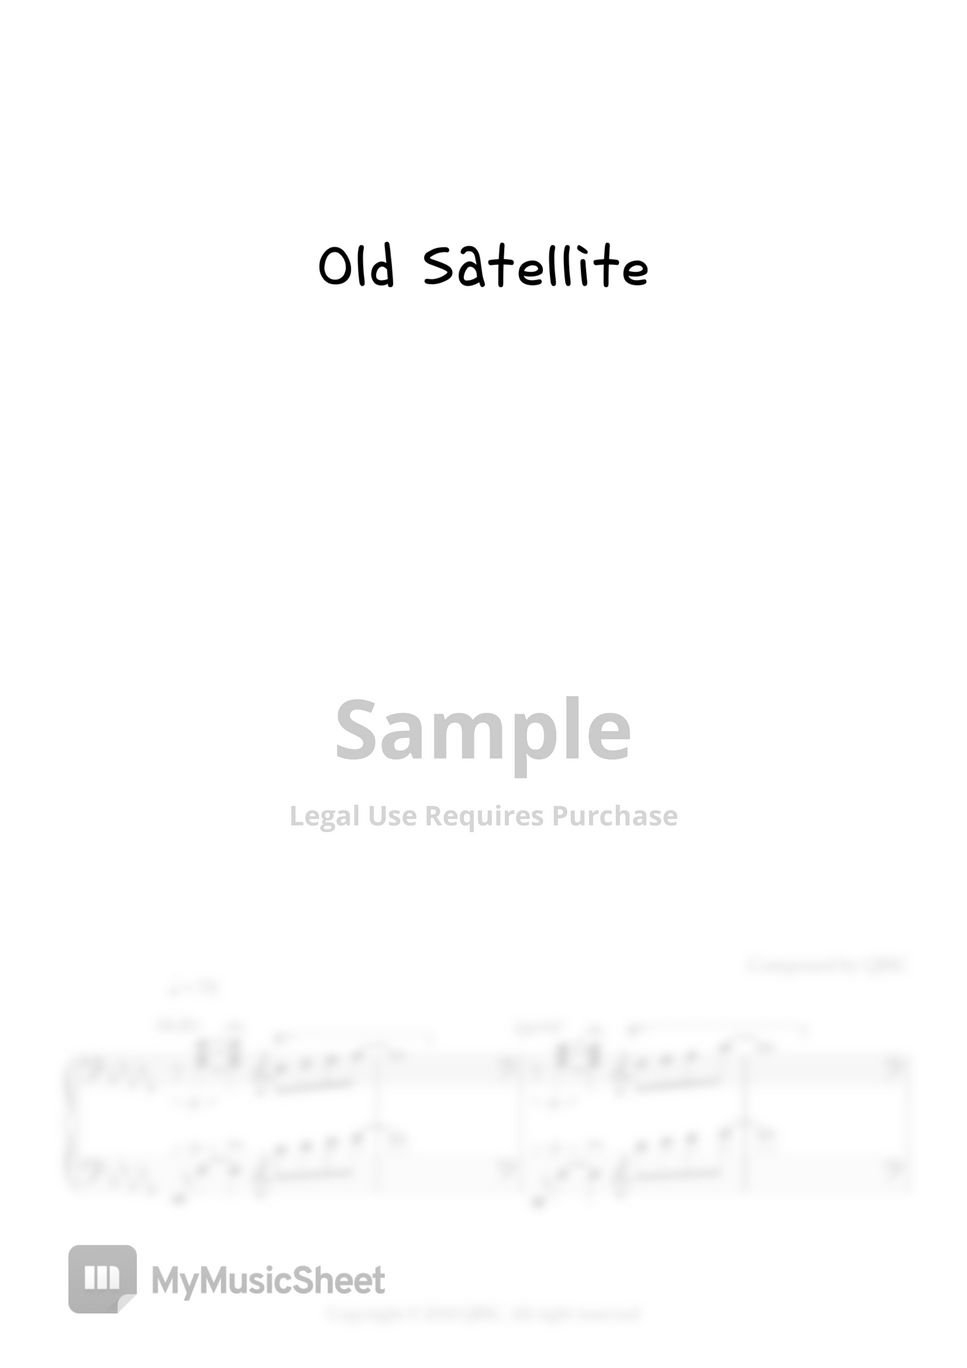 QBIC - Old satellite